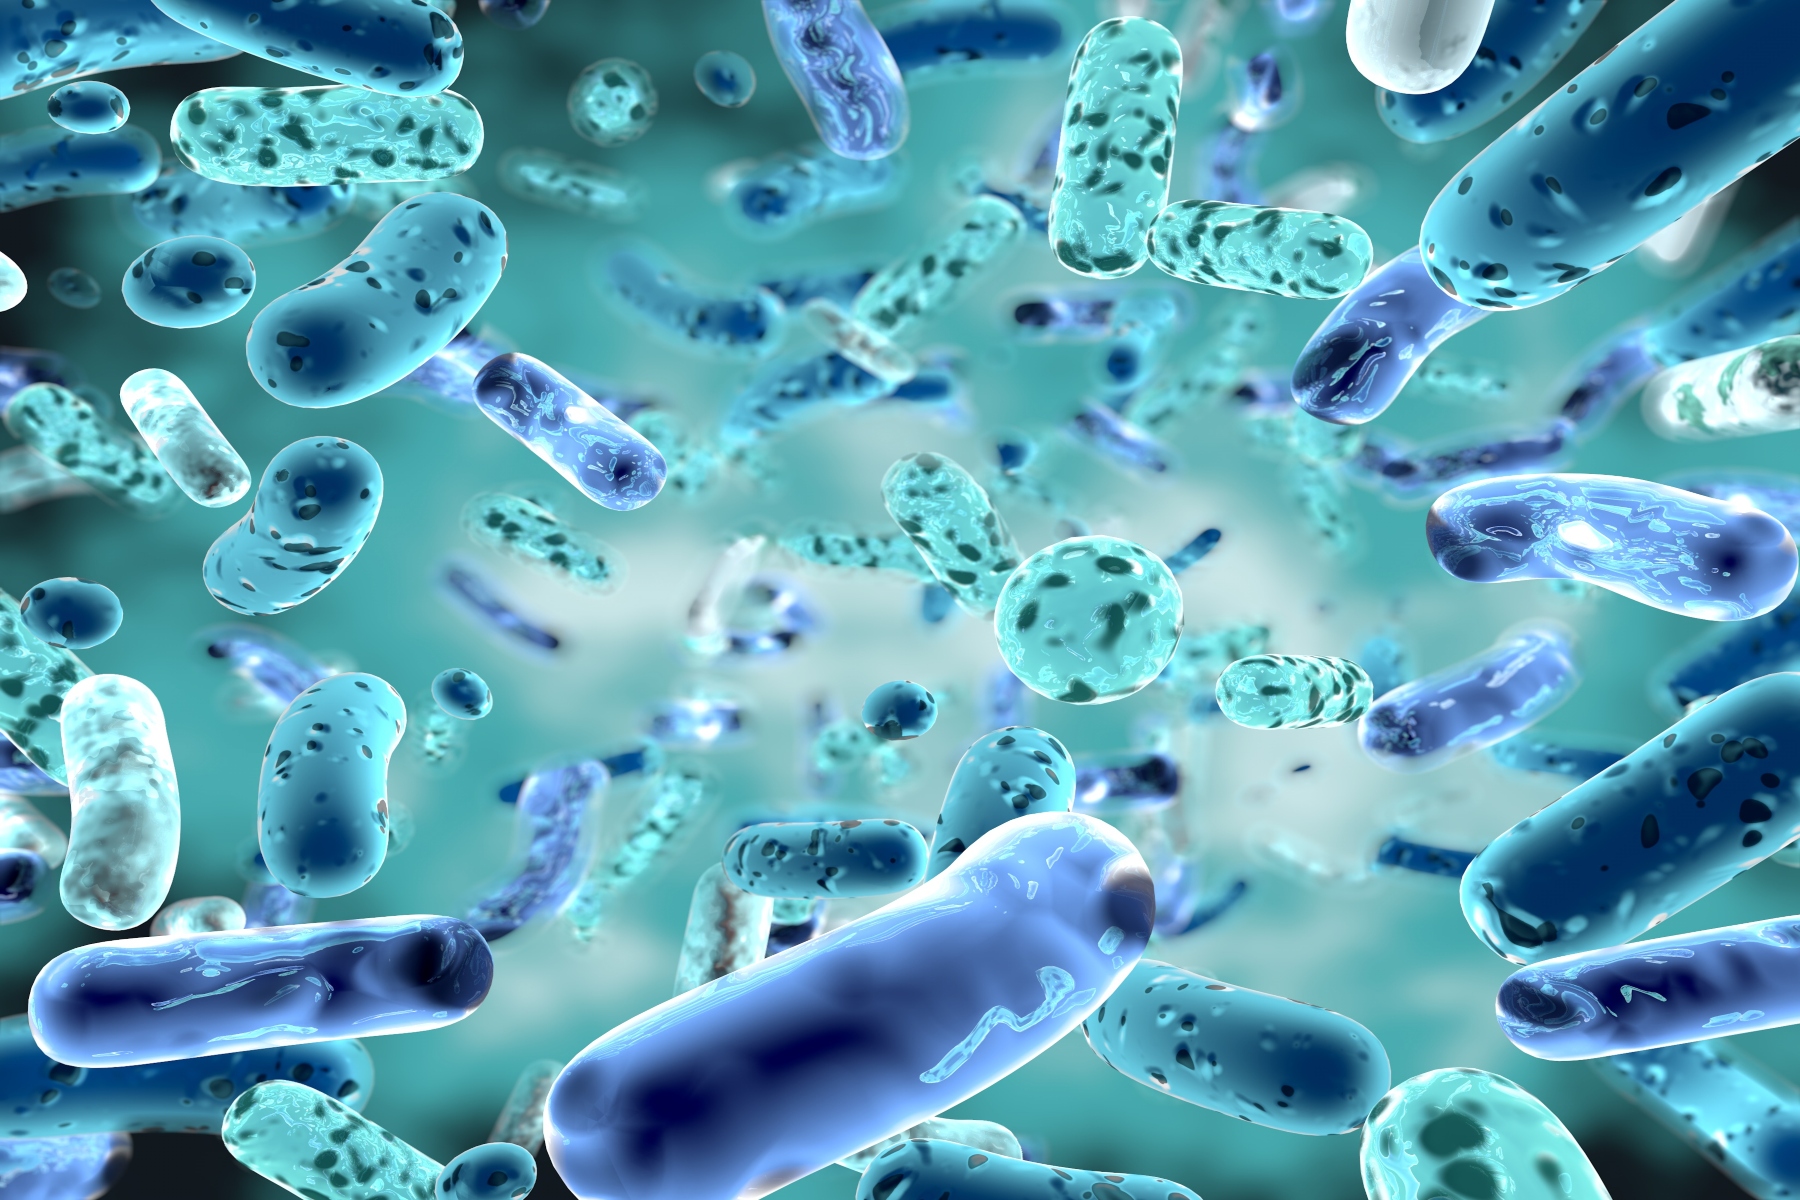 Μικροβίωμα: Πώς μπορεί να επηρεάσει την ανοσολογική απόκριση;